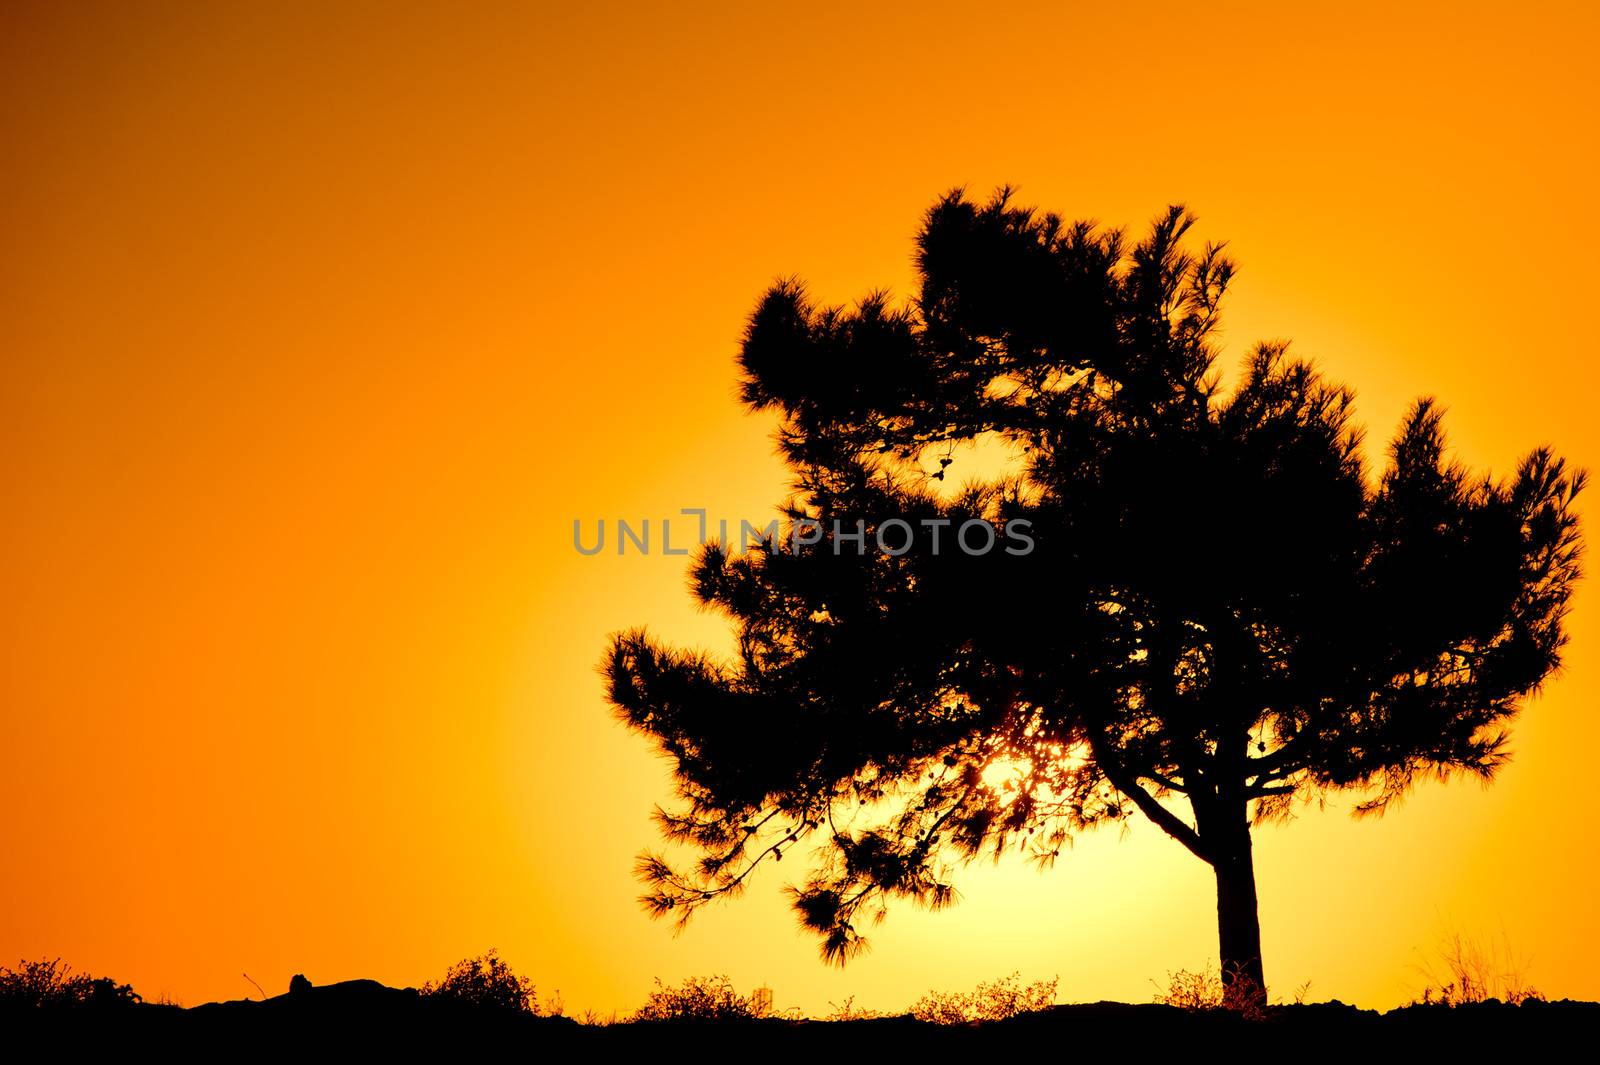 Single tree silhouette against sunrise